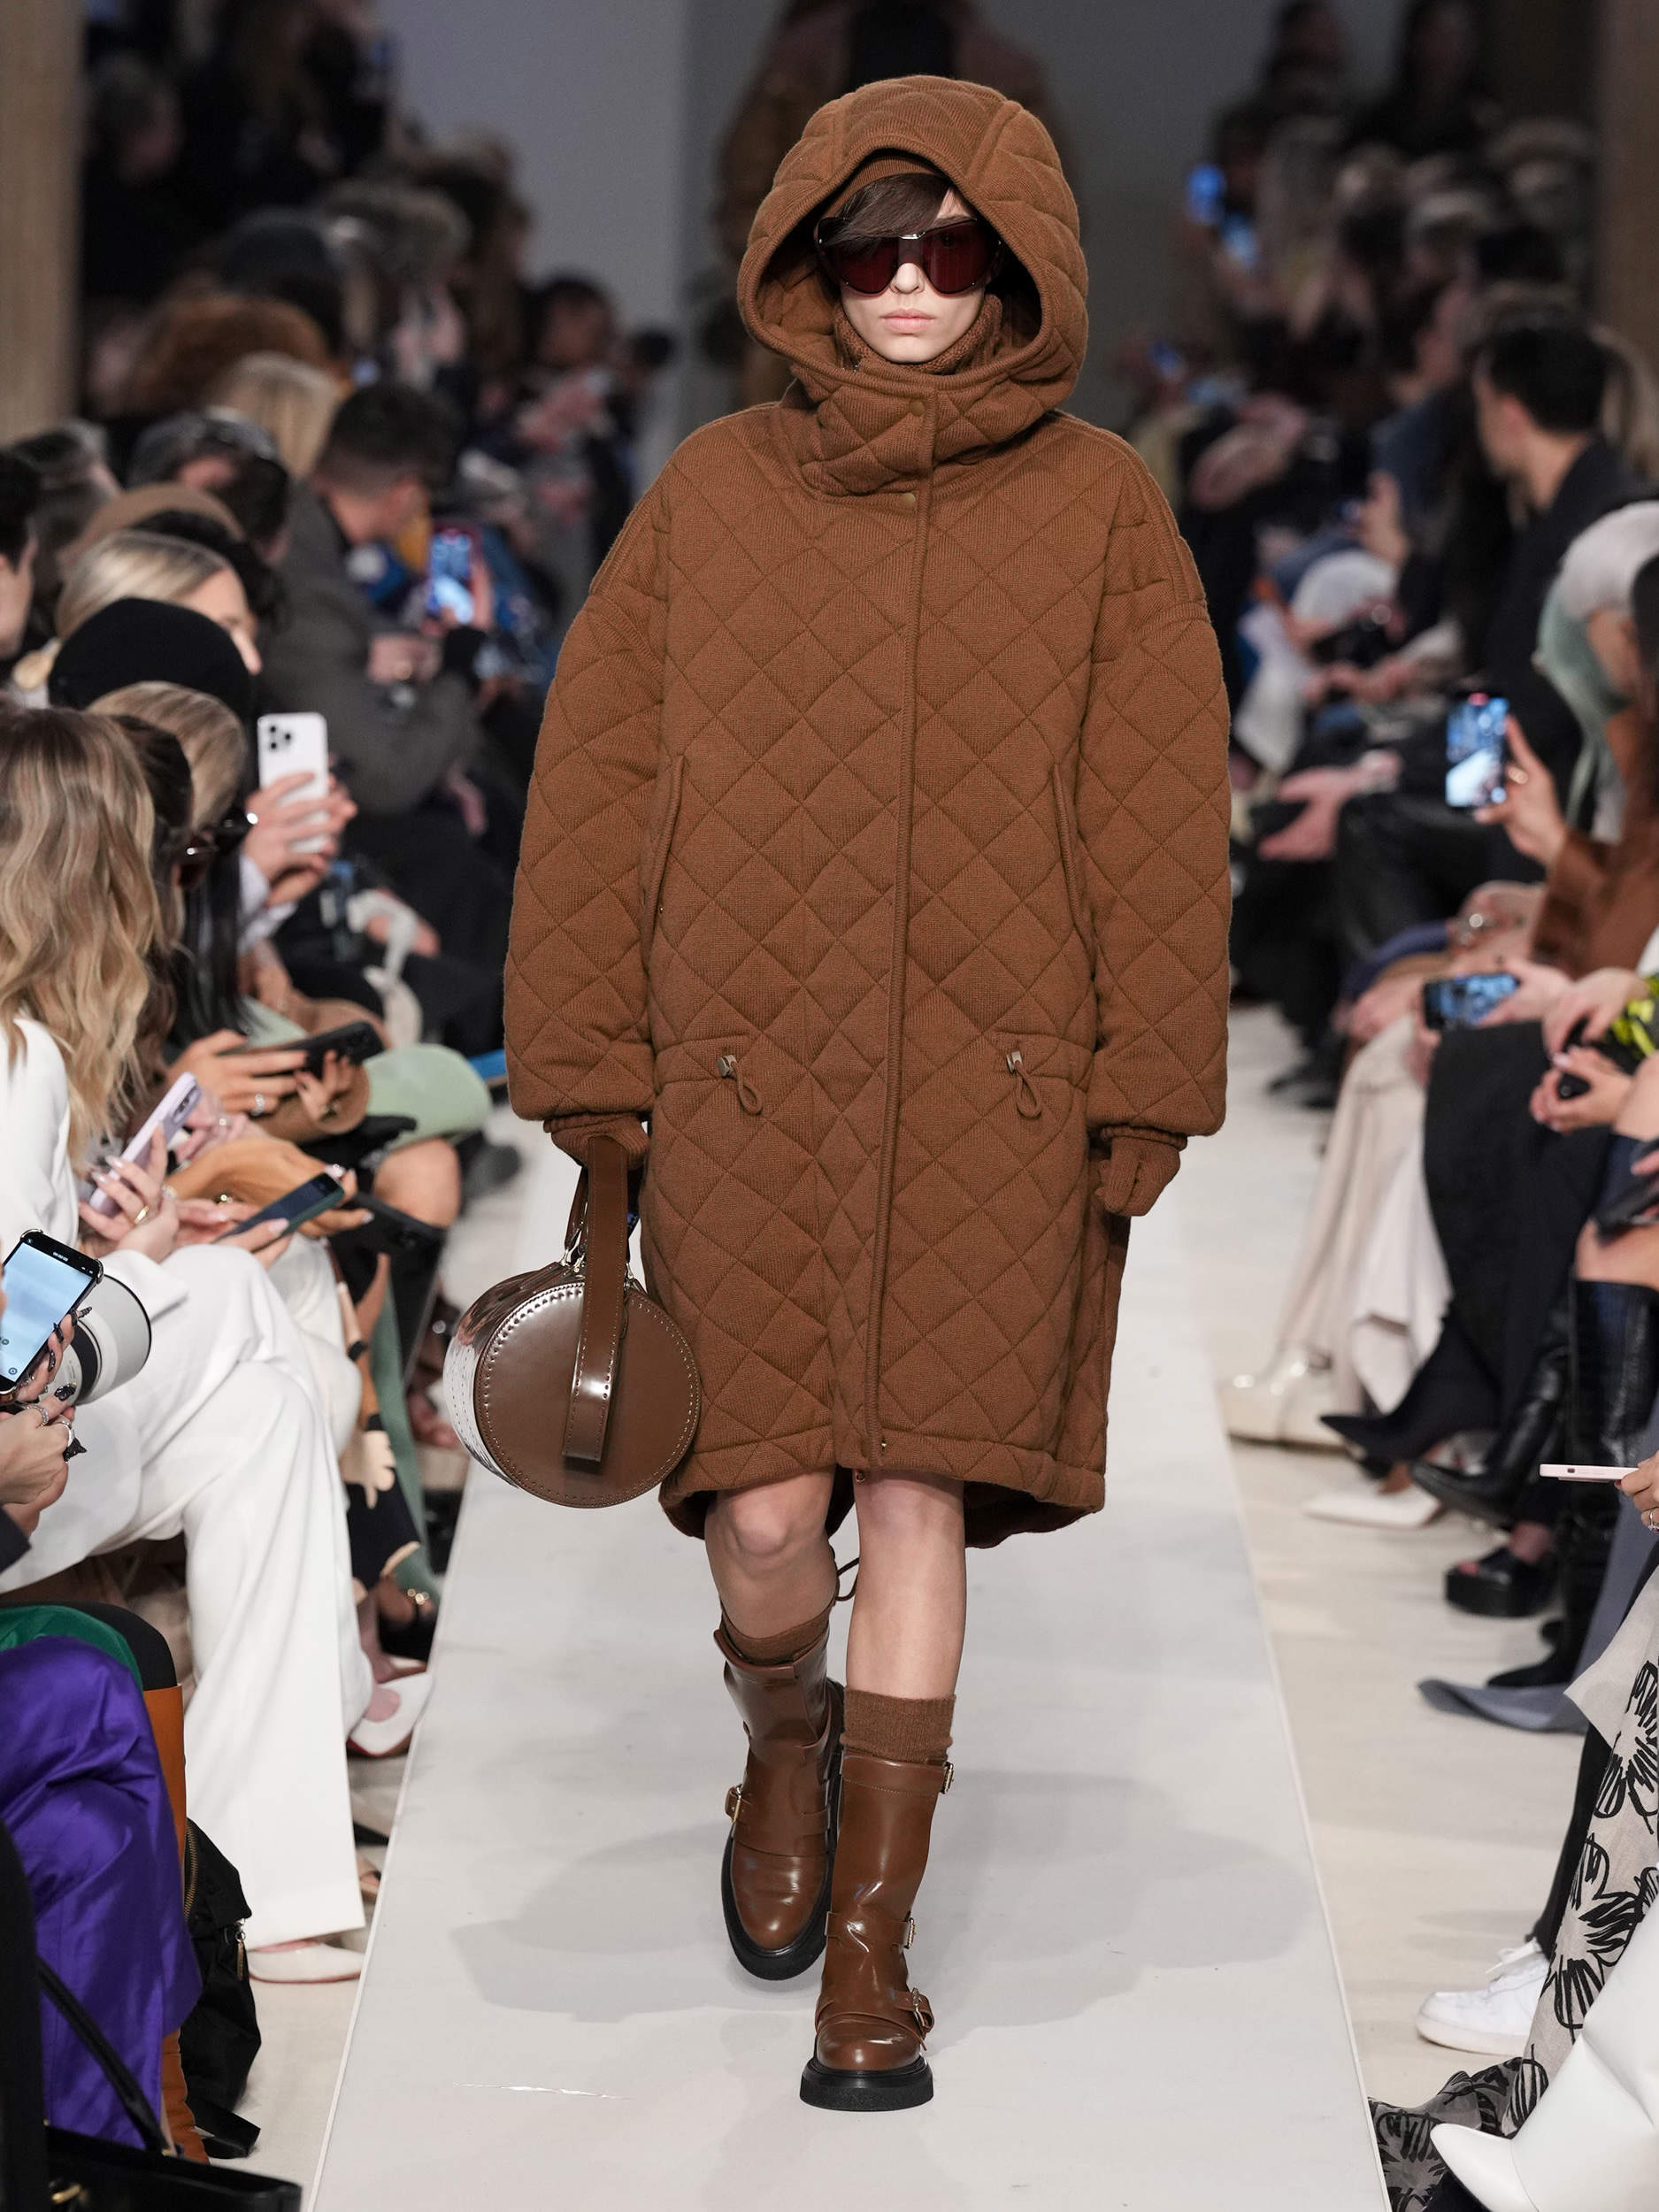 Max Mara: El punto y los abrigos de estilo 'casual' dominan la colección